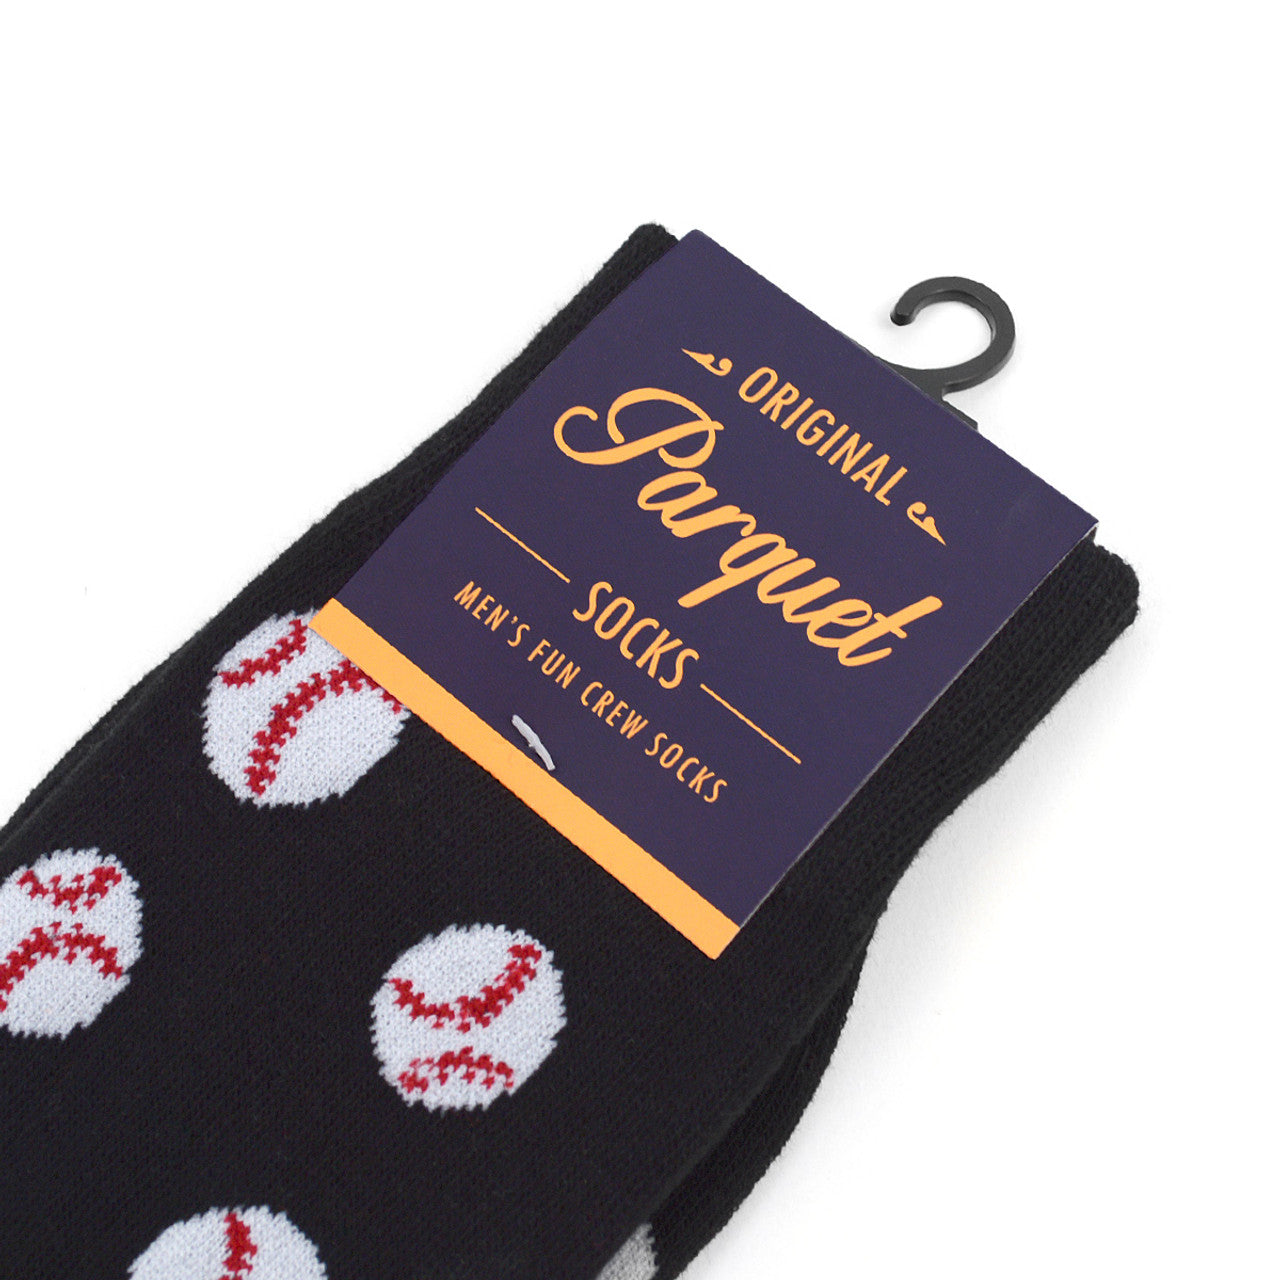 Baseball Socks Gift Men's Baseball Novelty Socks Boys of Summer Gift Dad Gift Boyfriend Gift Black and White Baseballs